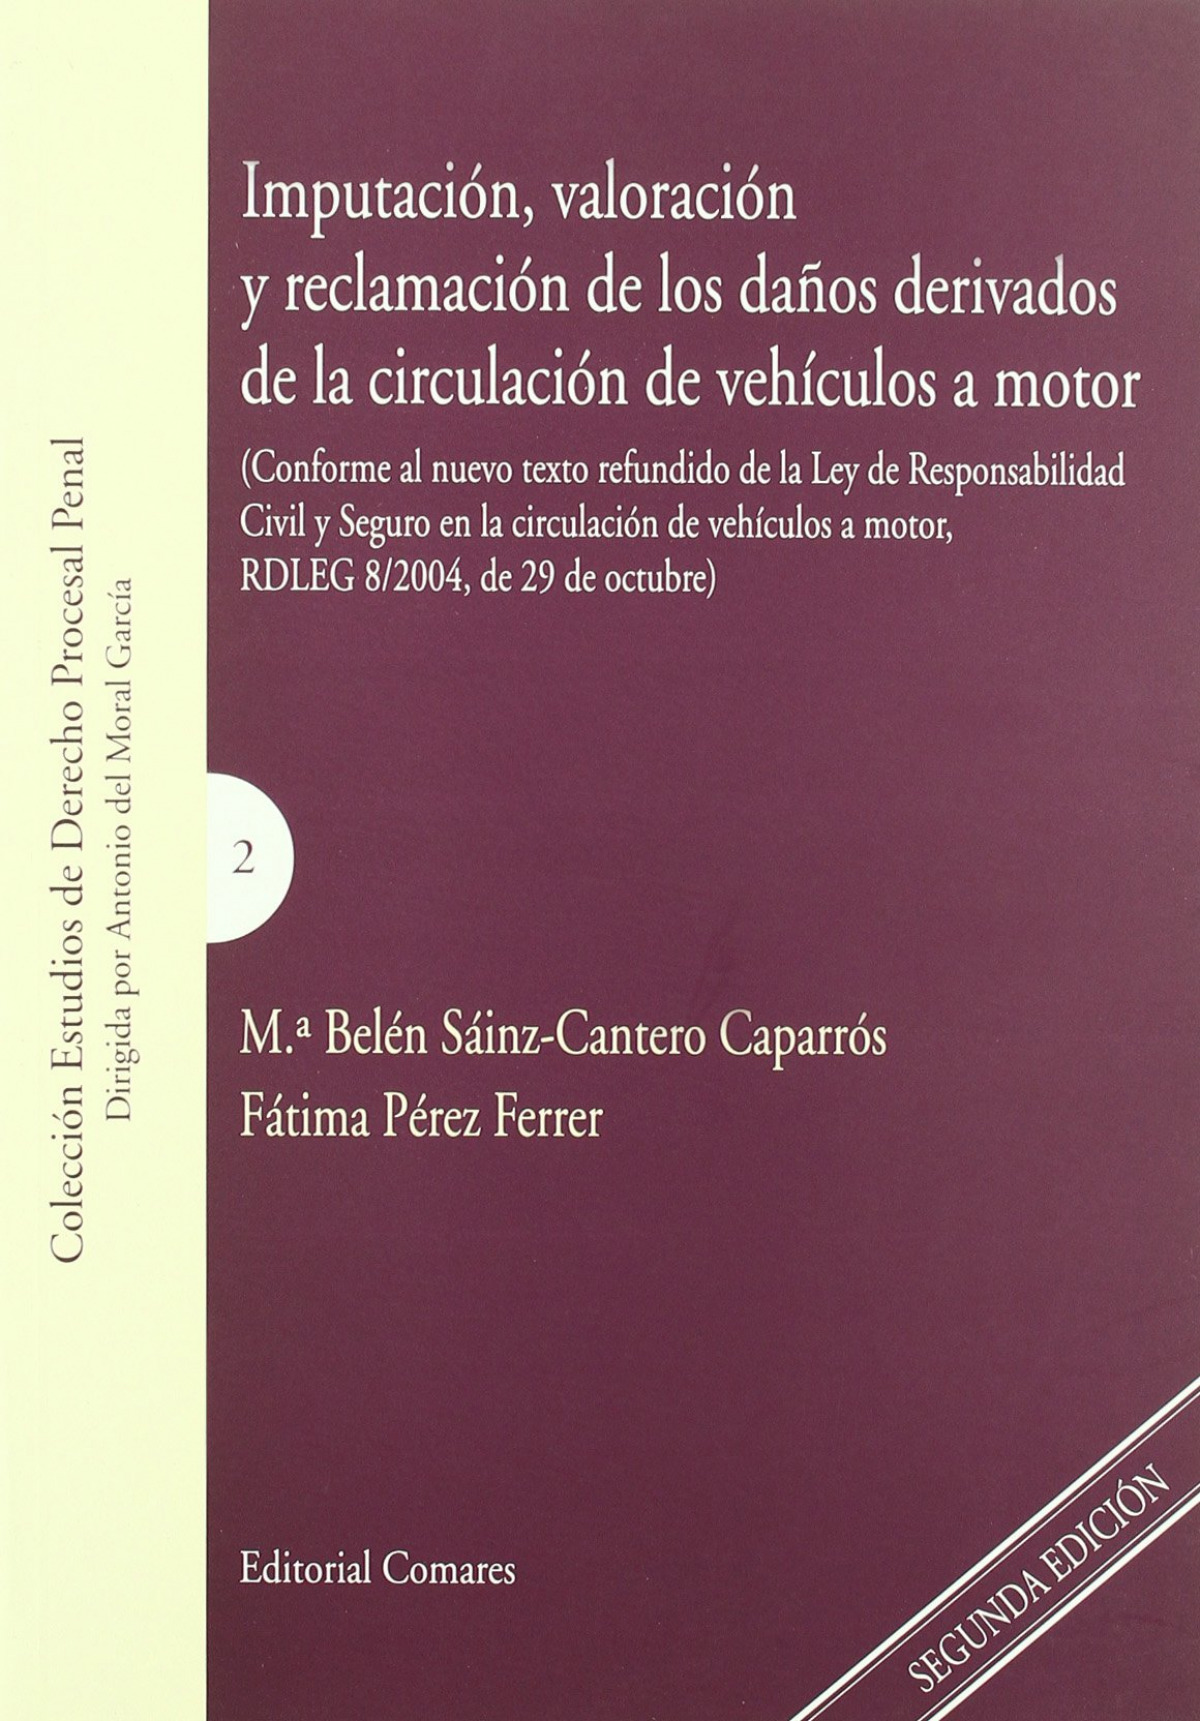 Imputación, valoración y reclamación de los daños derivados de la circ - Sáinz-Cantero Caparrós, María Belén / Pérez Ferrer, Fátima